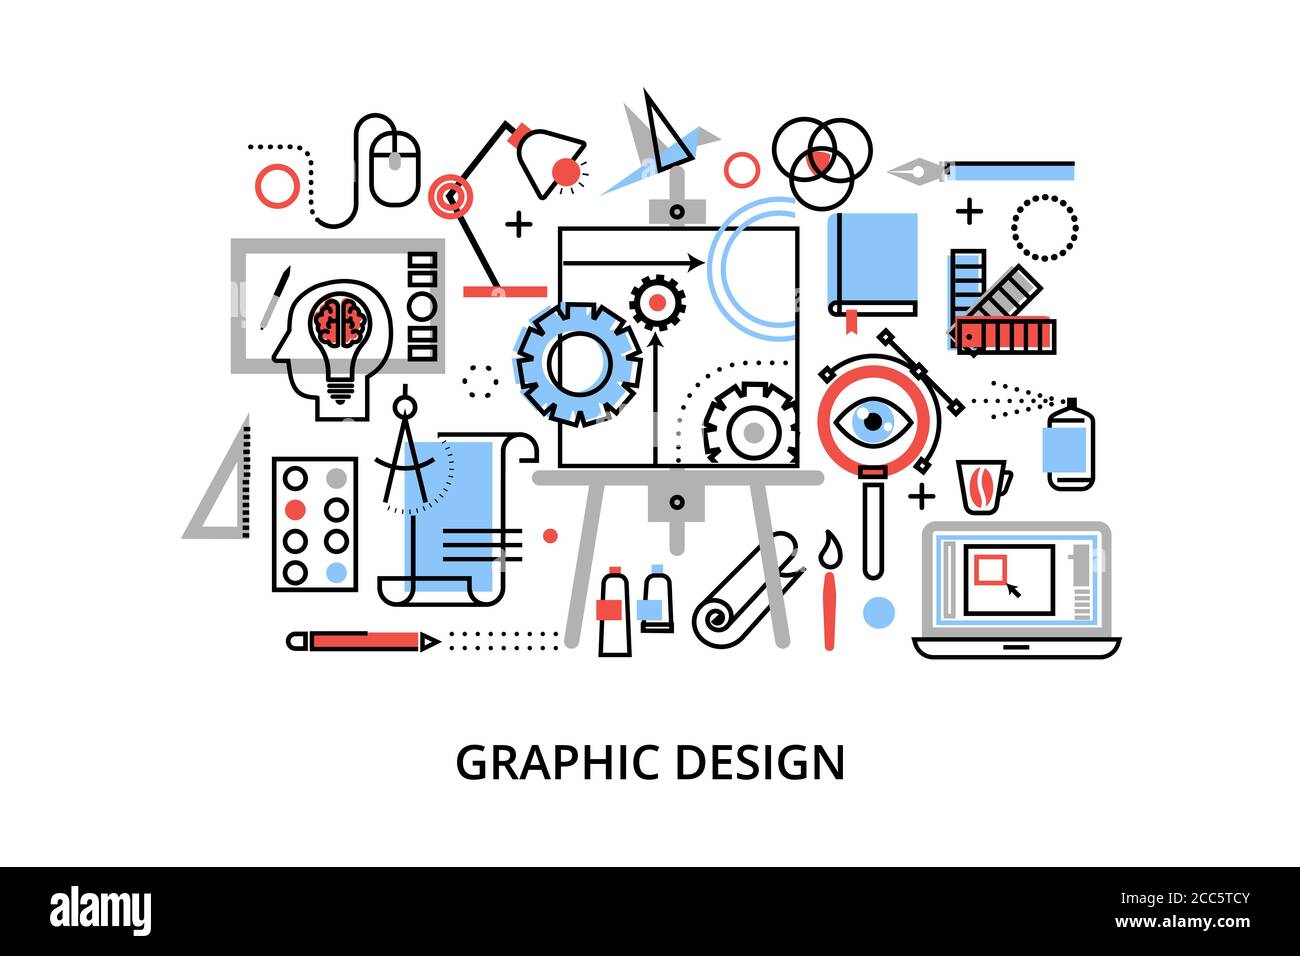 Illustrazione vettoriale di progettazione piatta e sottile, concetto infografico di progettazione grafica, elementi e strumenti di progettazione e processo di sviluppo del design, per Illustrazione Vettoriale